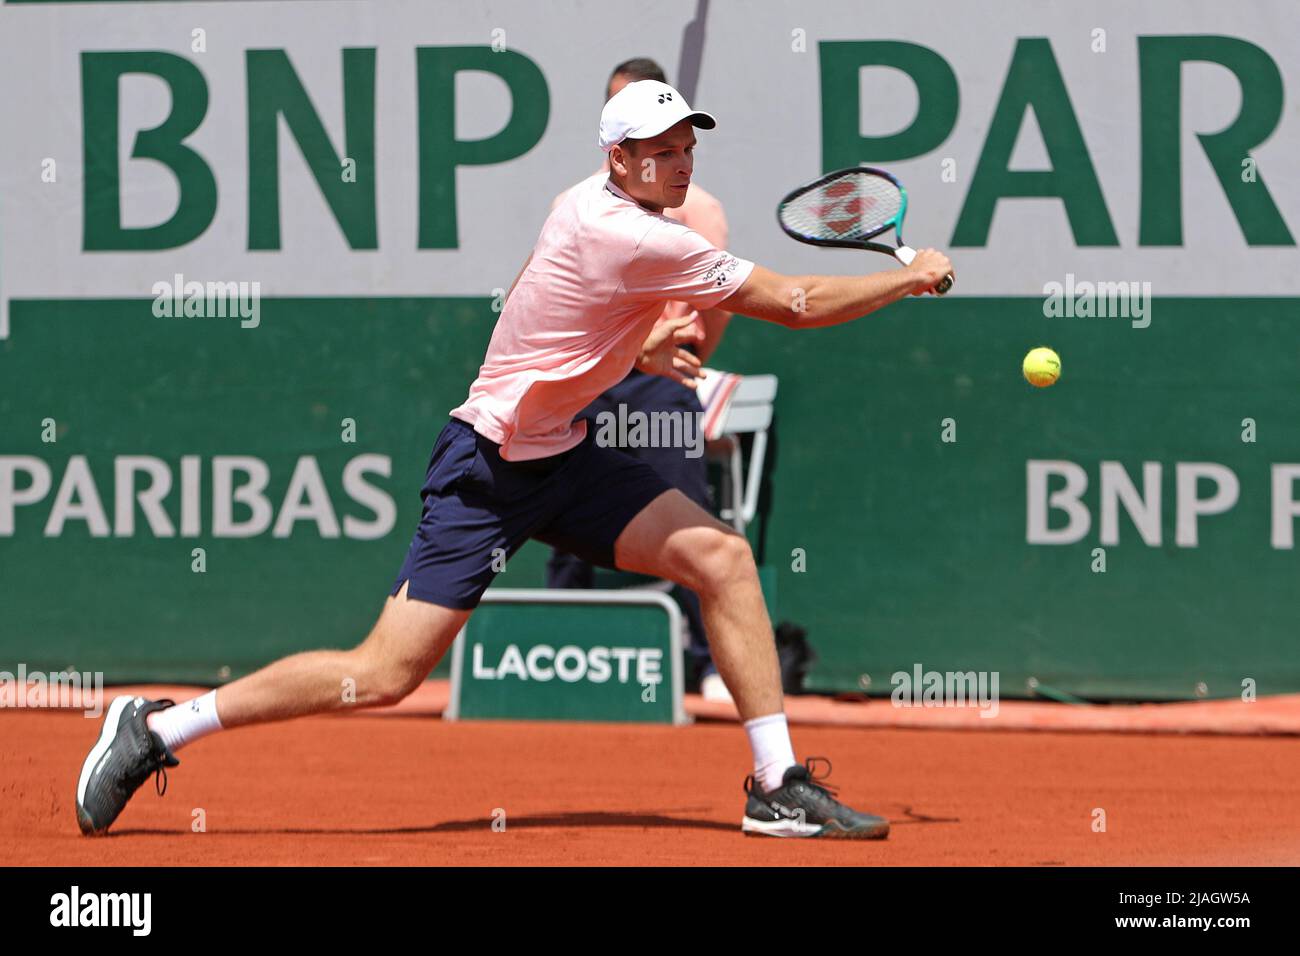 30th maggio 2022; Roland Garros, Parigi, Francia: Torneo Open di tennis  francese: Hubert Hurkacz (POL) in azione contro Casper Ruud (NOR Foto stock  - Alamy